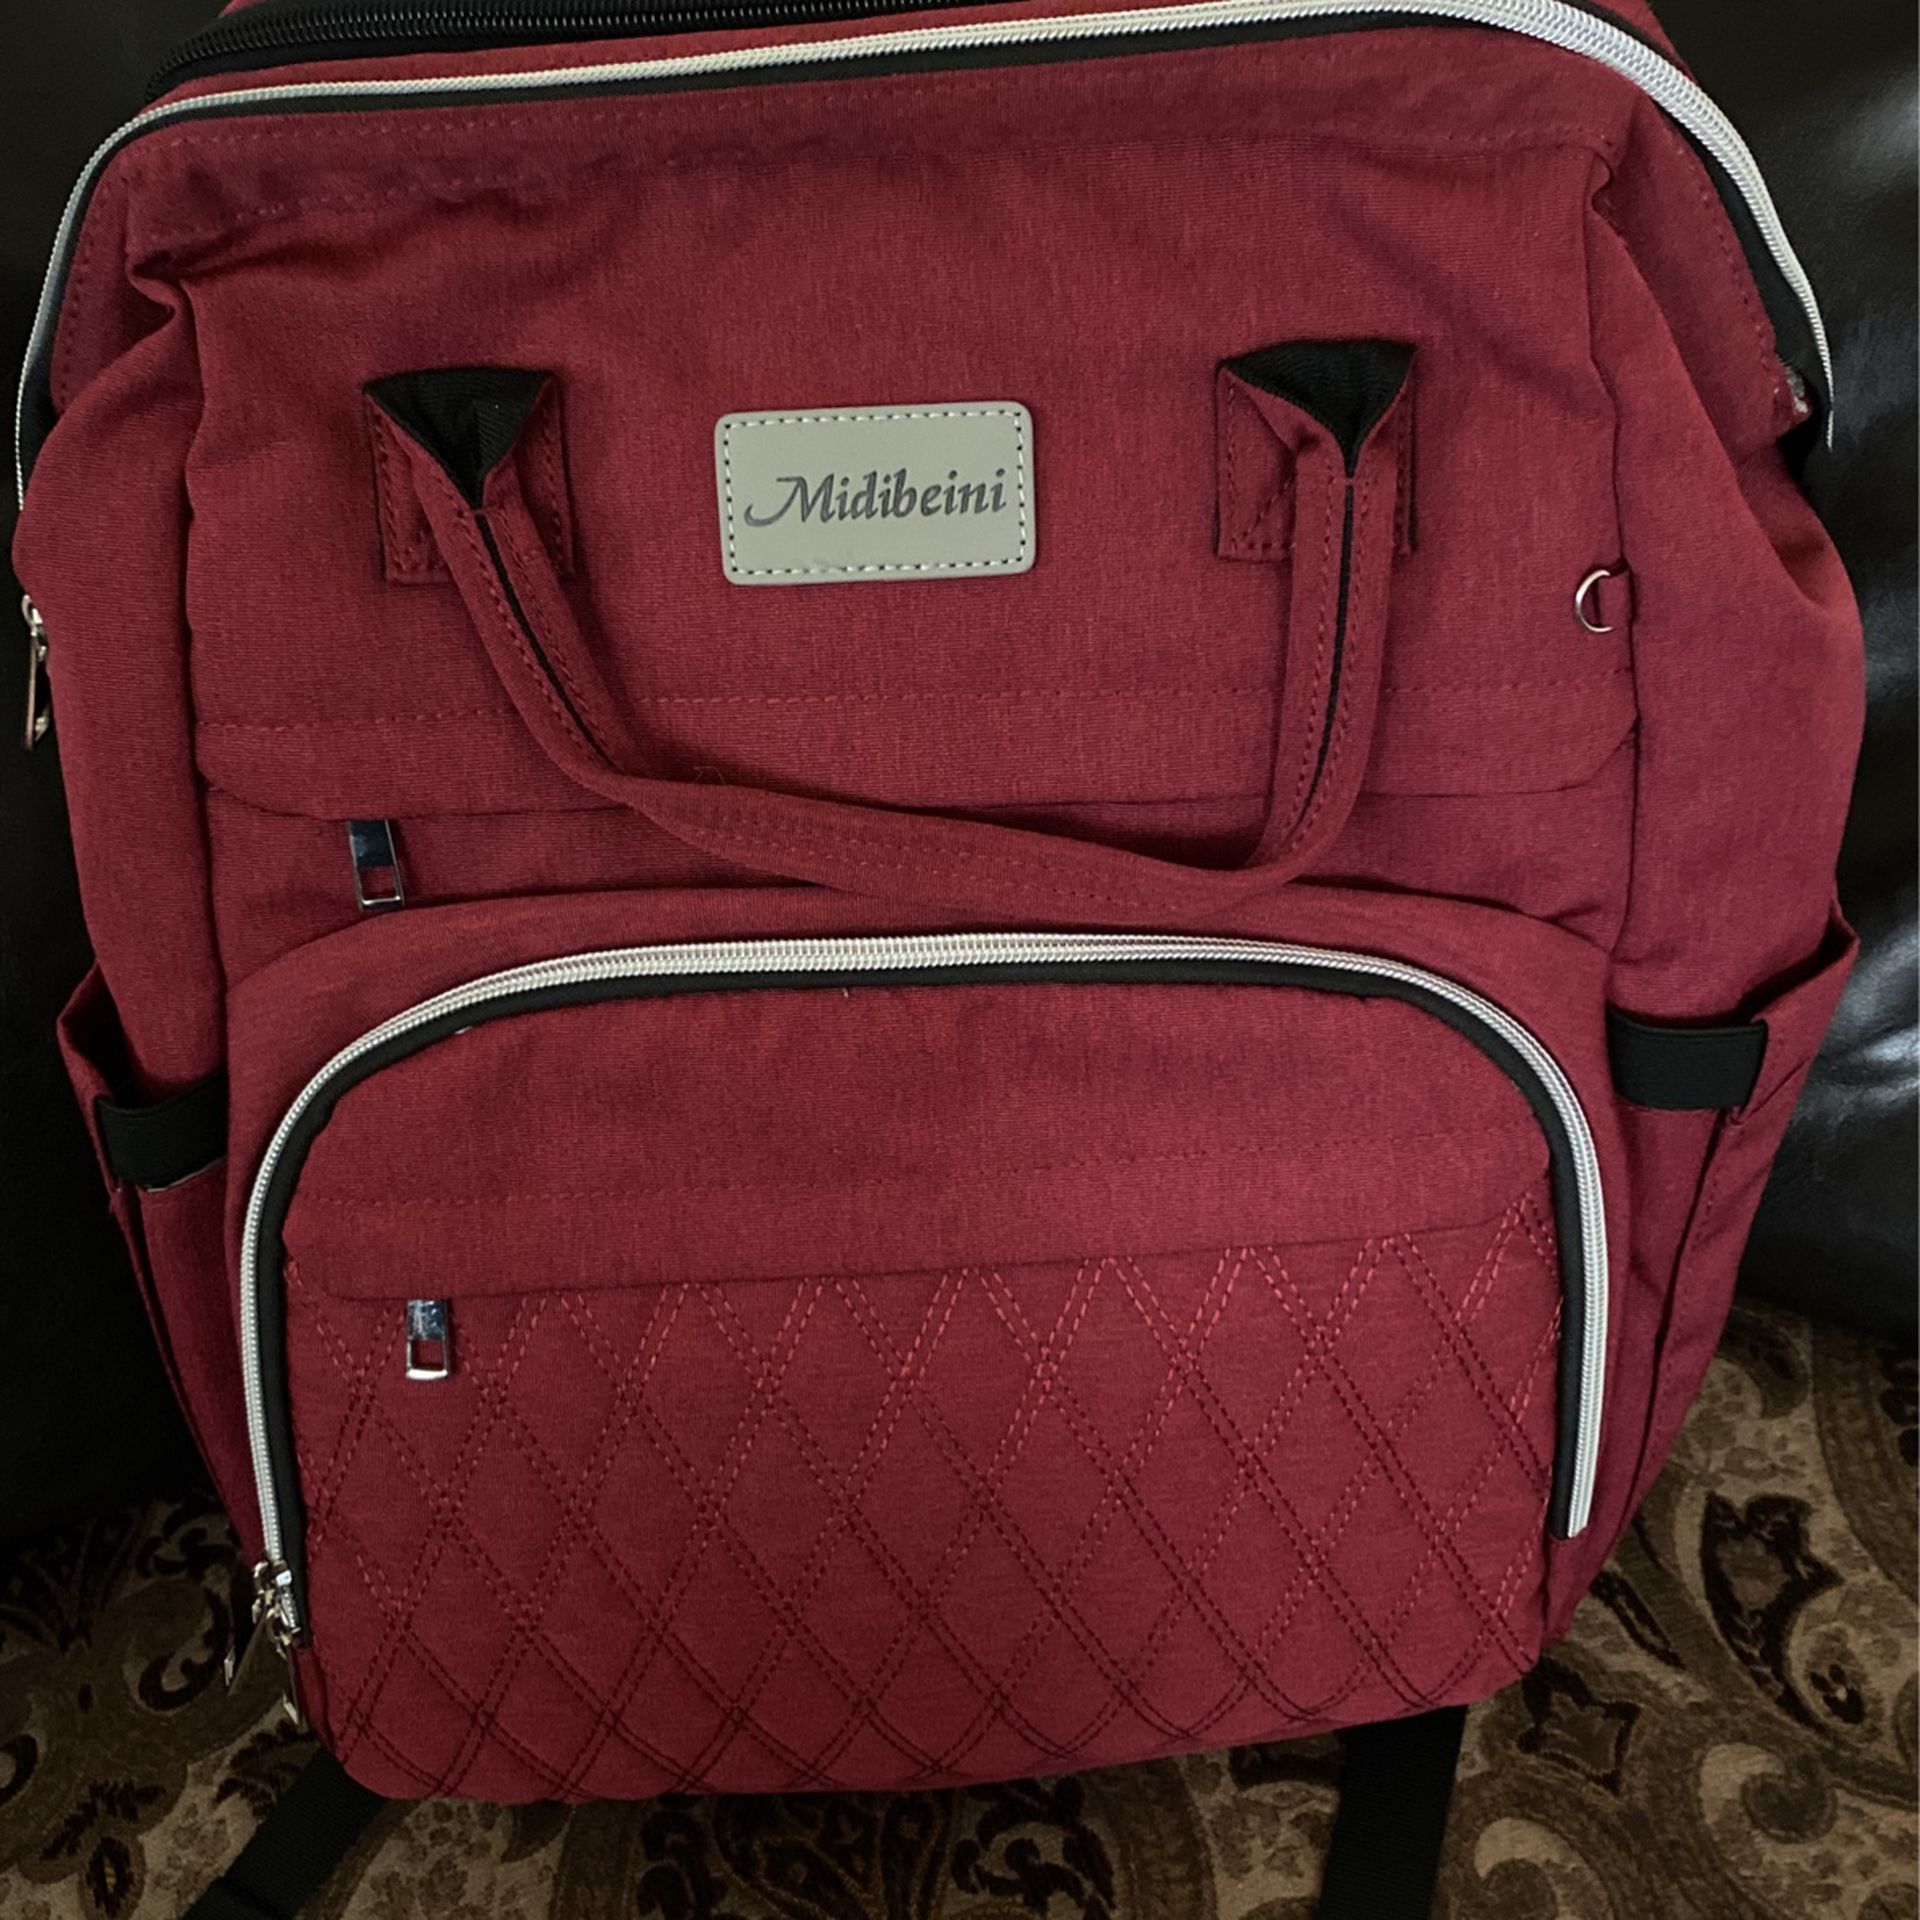 Midibeini Diaper Bag pack 